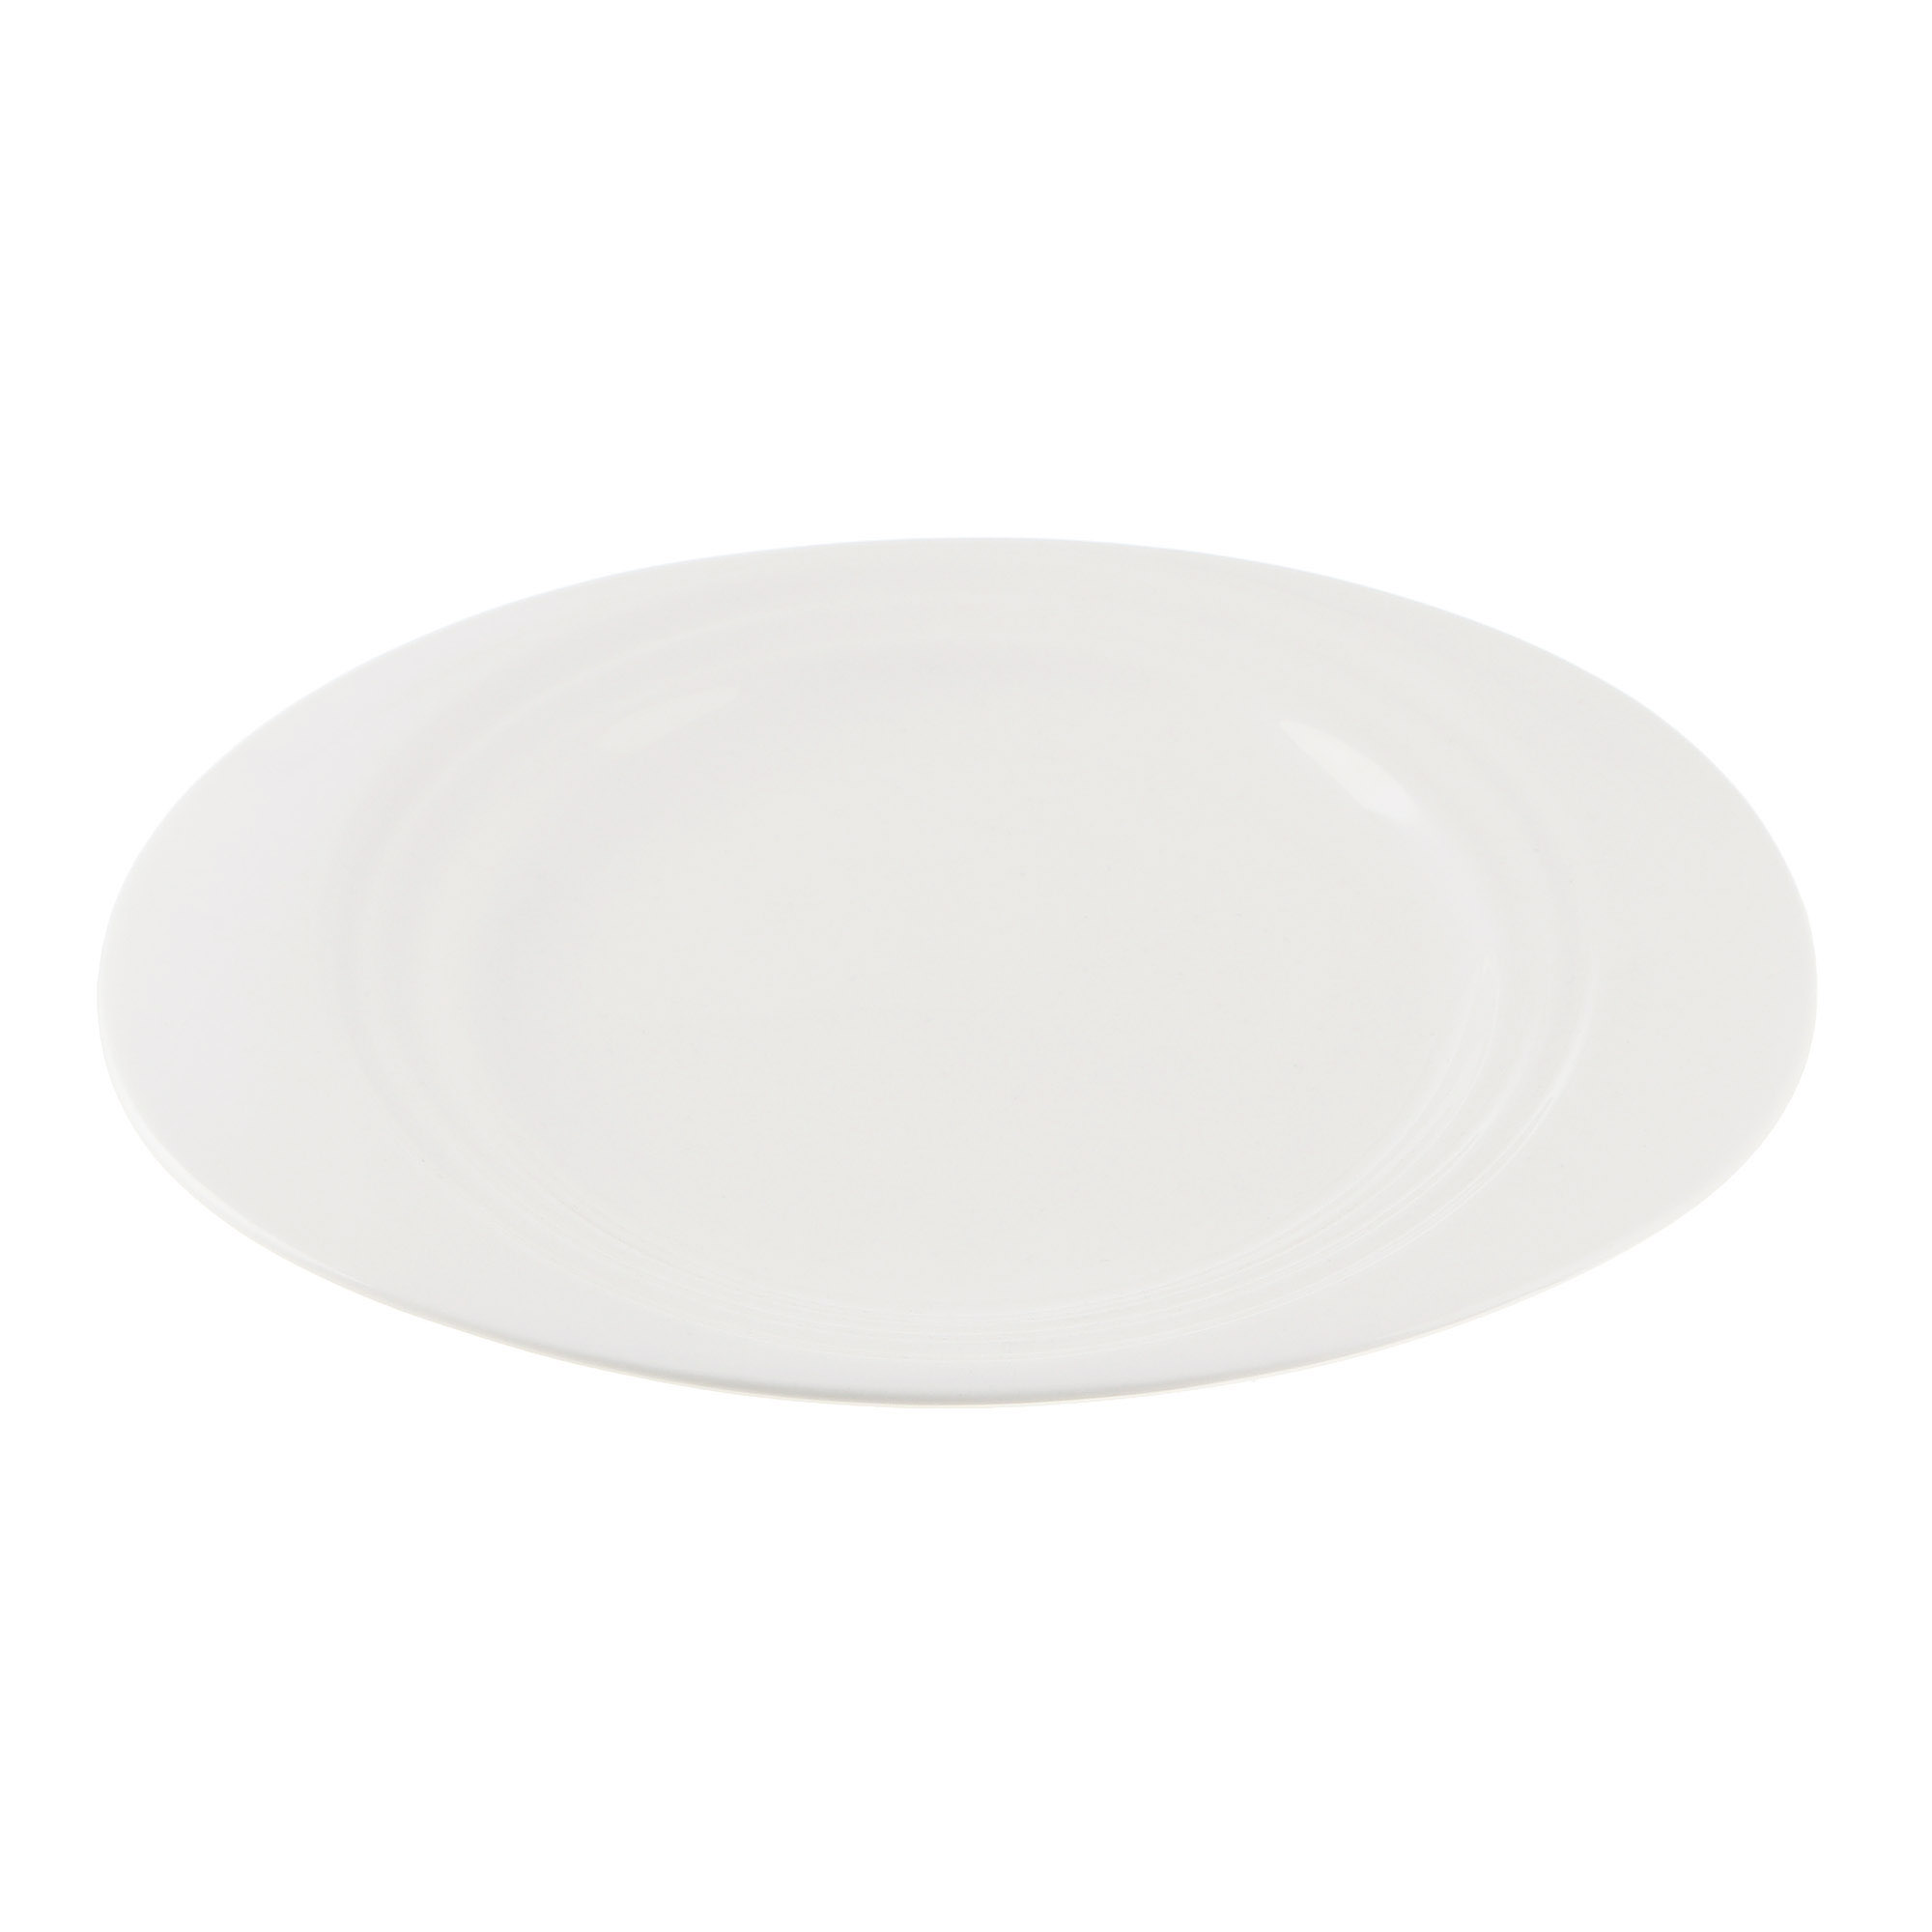 Тарелка Cameo Concentrics фарфор 28,2 см тарелка cameo concentrics фарфор 28 2 см